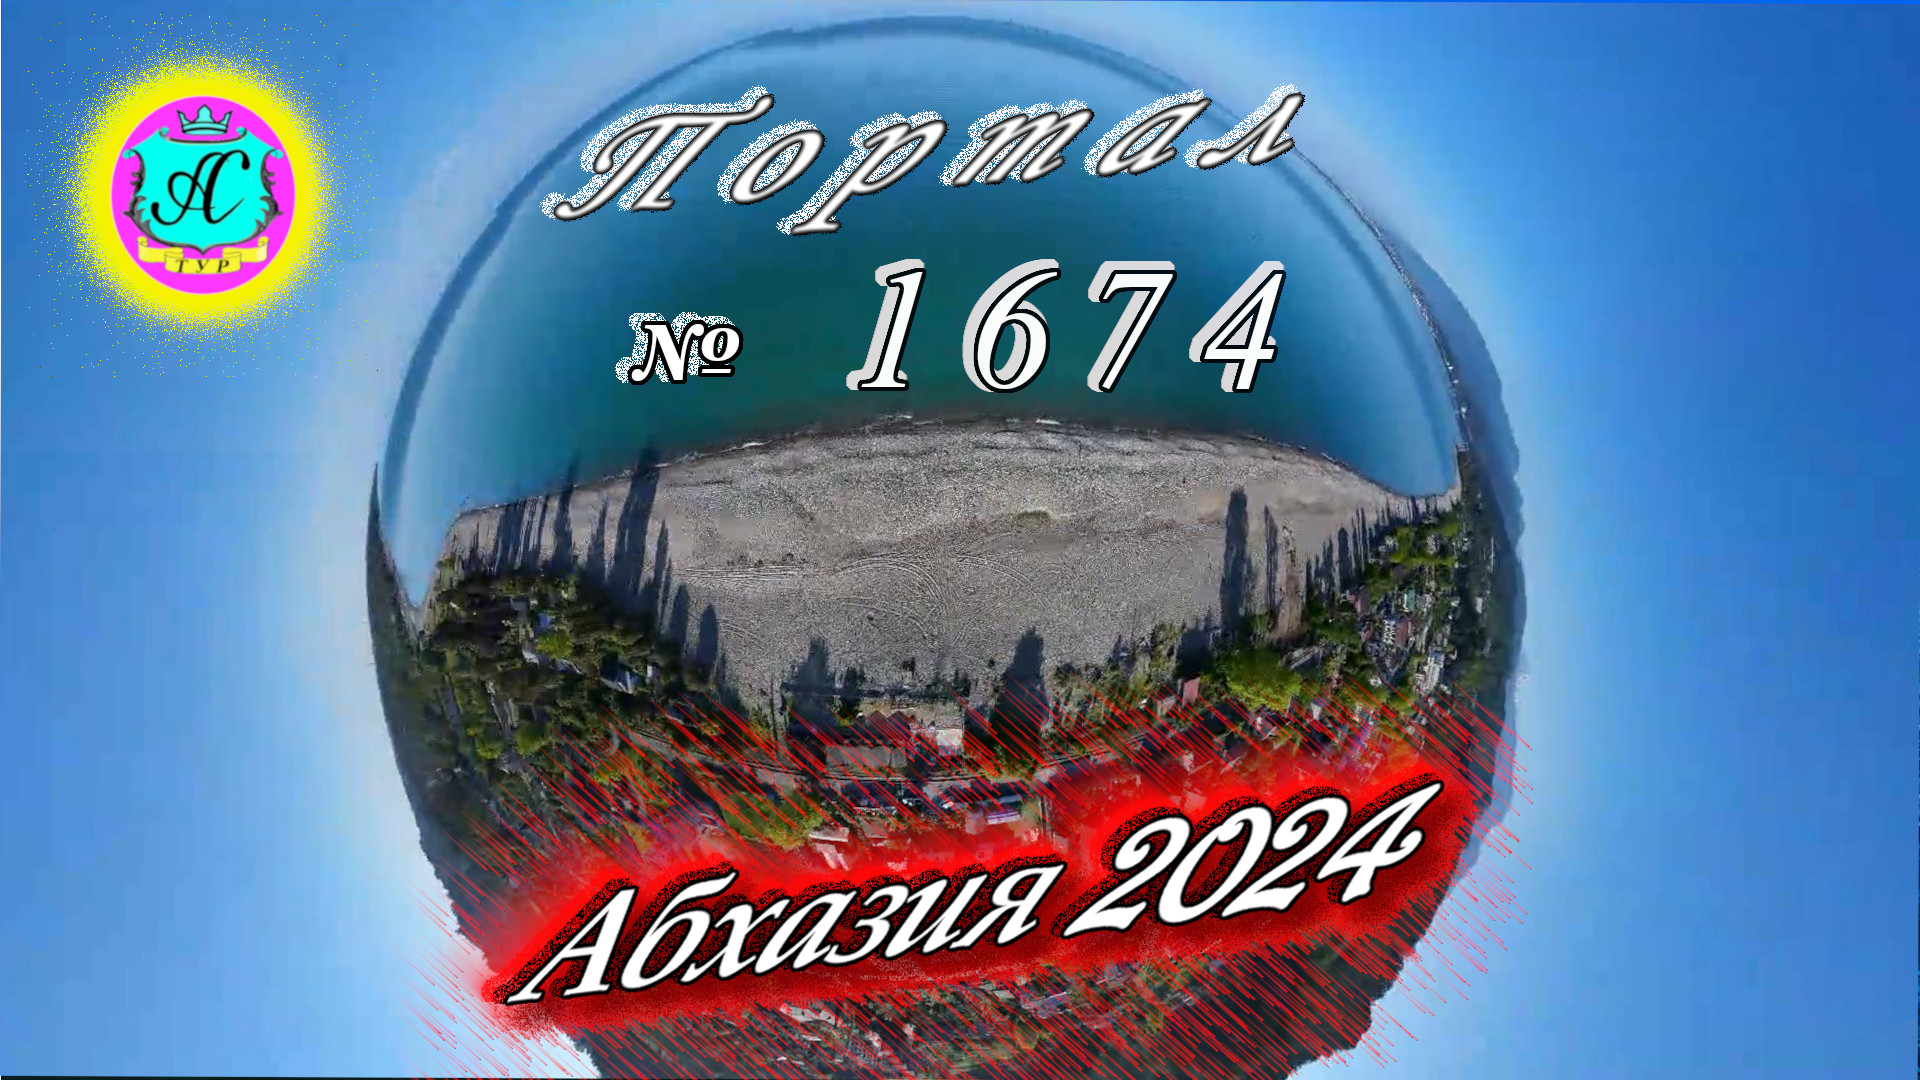 #Абхазия2024 🌴 22 мая❗Выпуск №1674❗ Погода от Серого Волка🌡вчера 24°🌡ночью +14°🐬море +16,8°